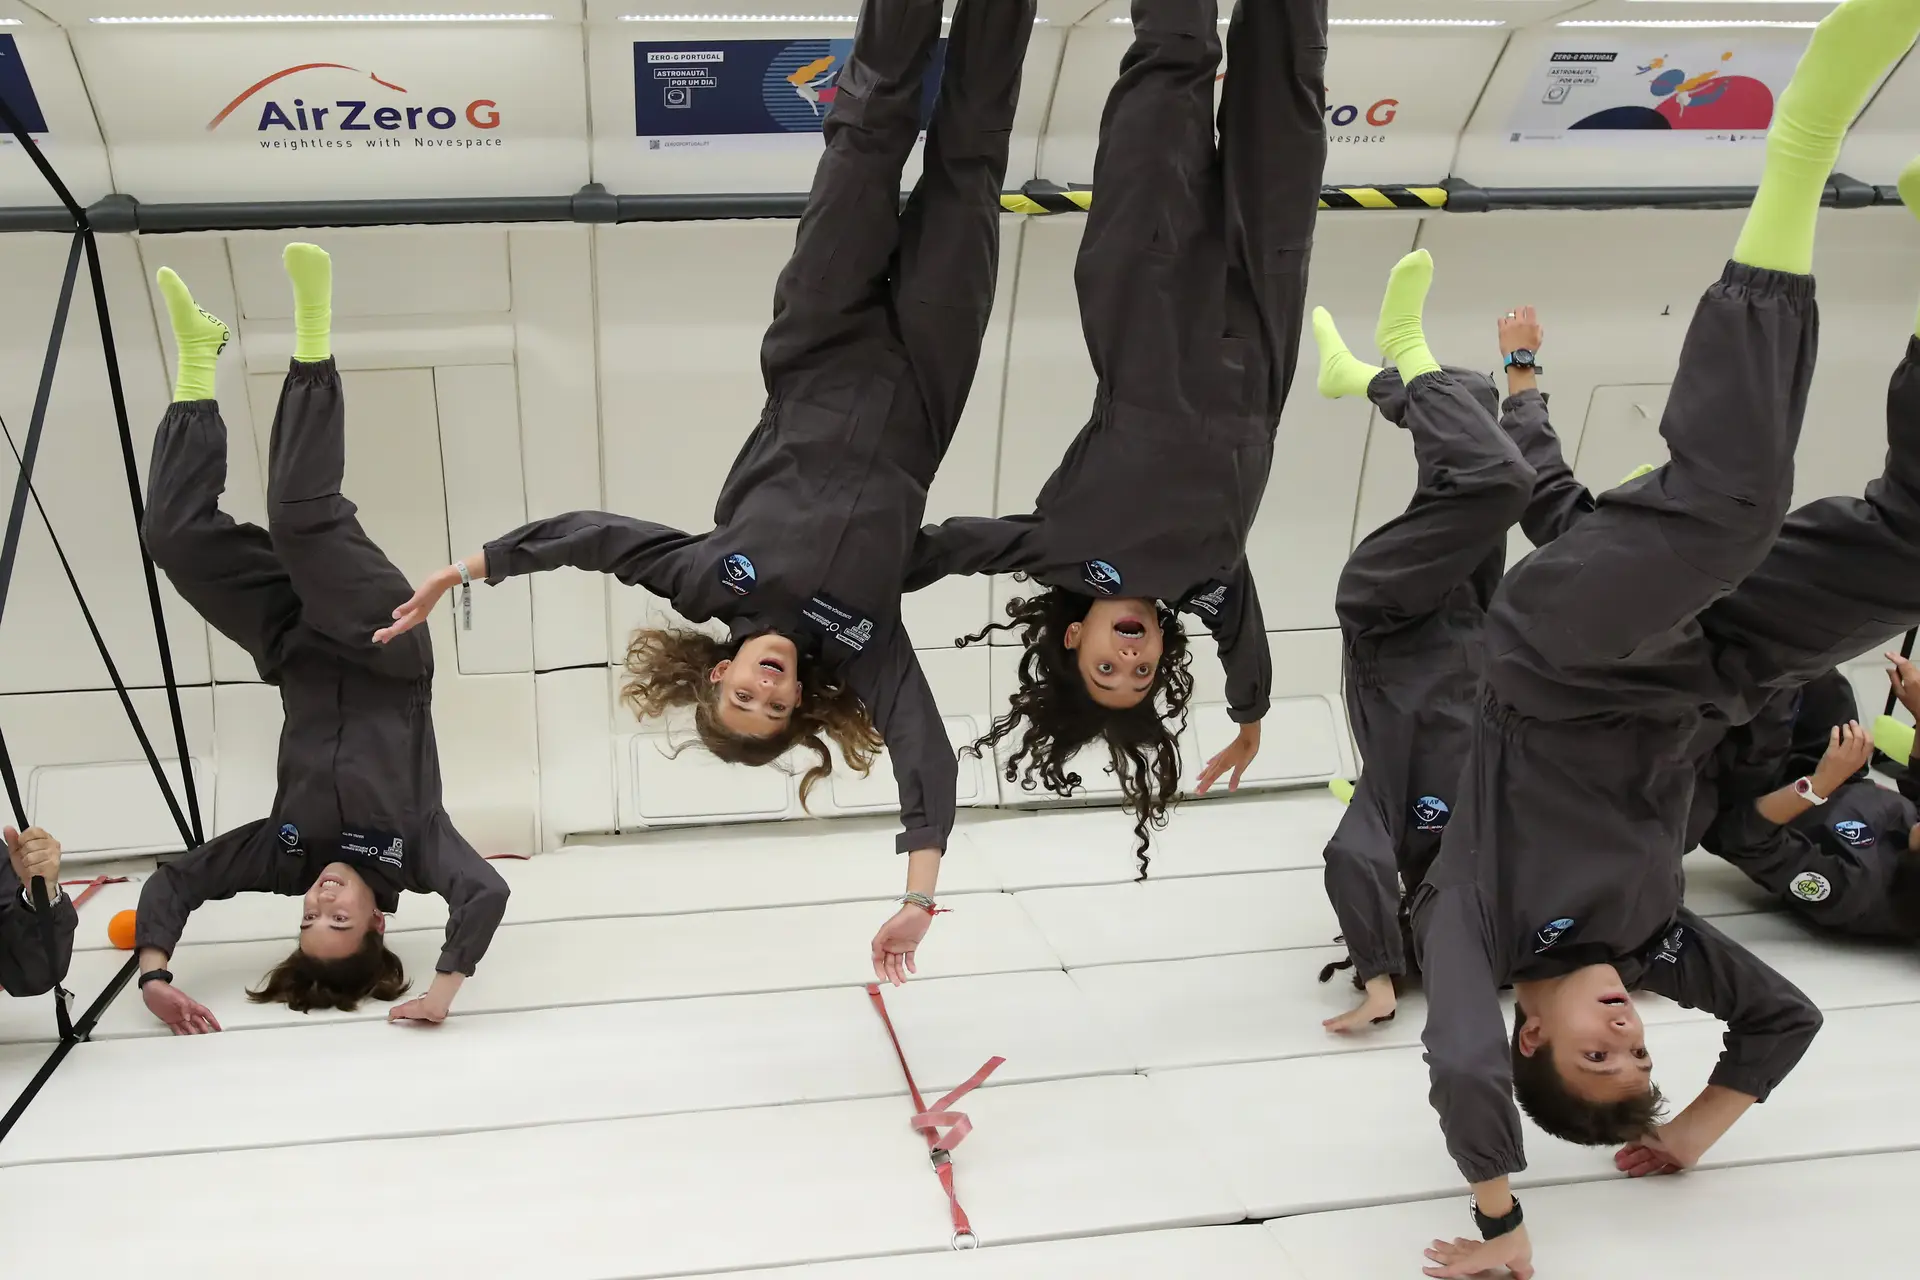 “Estarmos ali a flutuar é algo que poucos sentem na vida”: a experiência de 31 alunos em gravidade zero